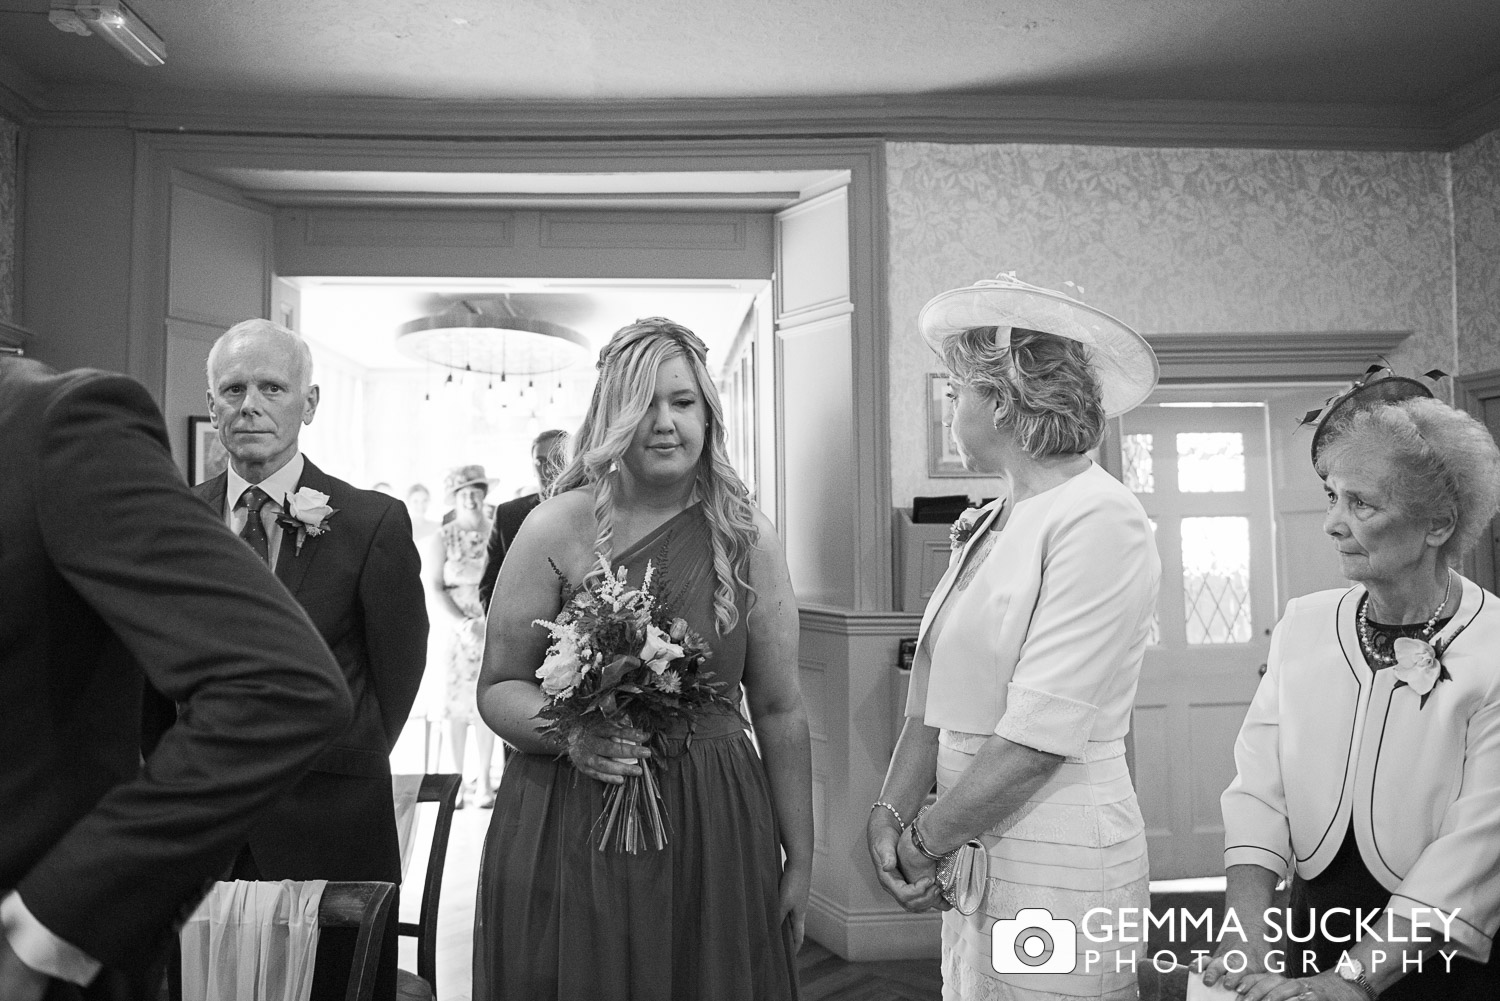 Bridesmaid walking down the aisle at Grassington house wedding